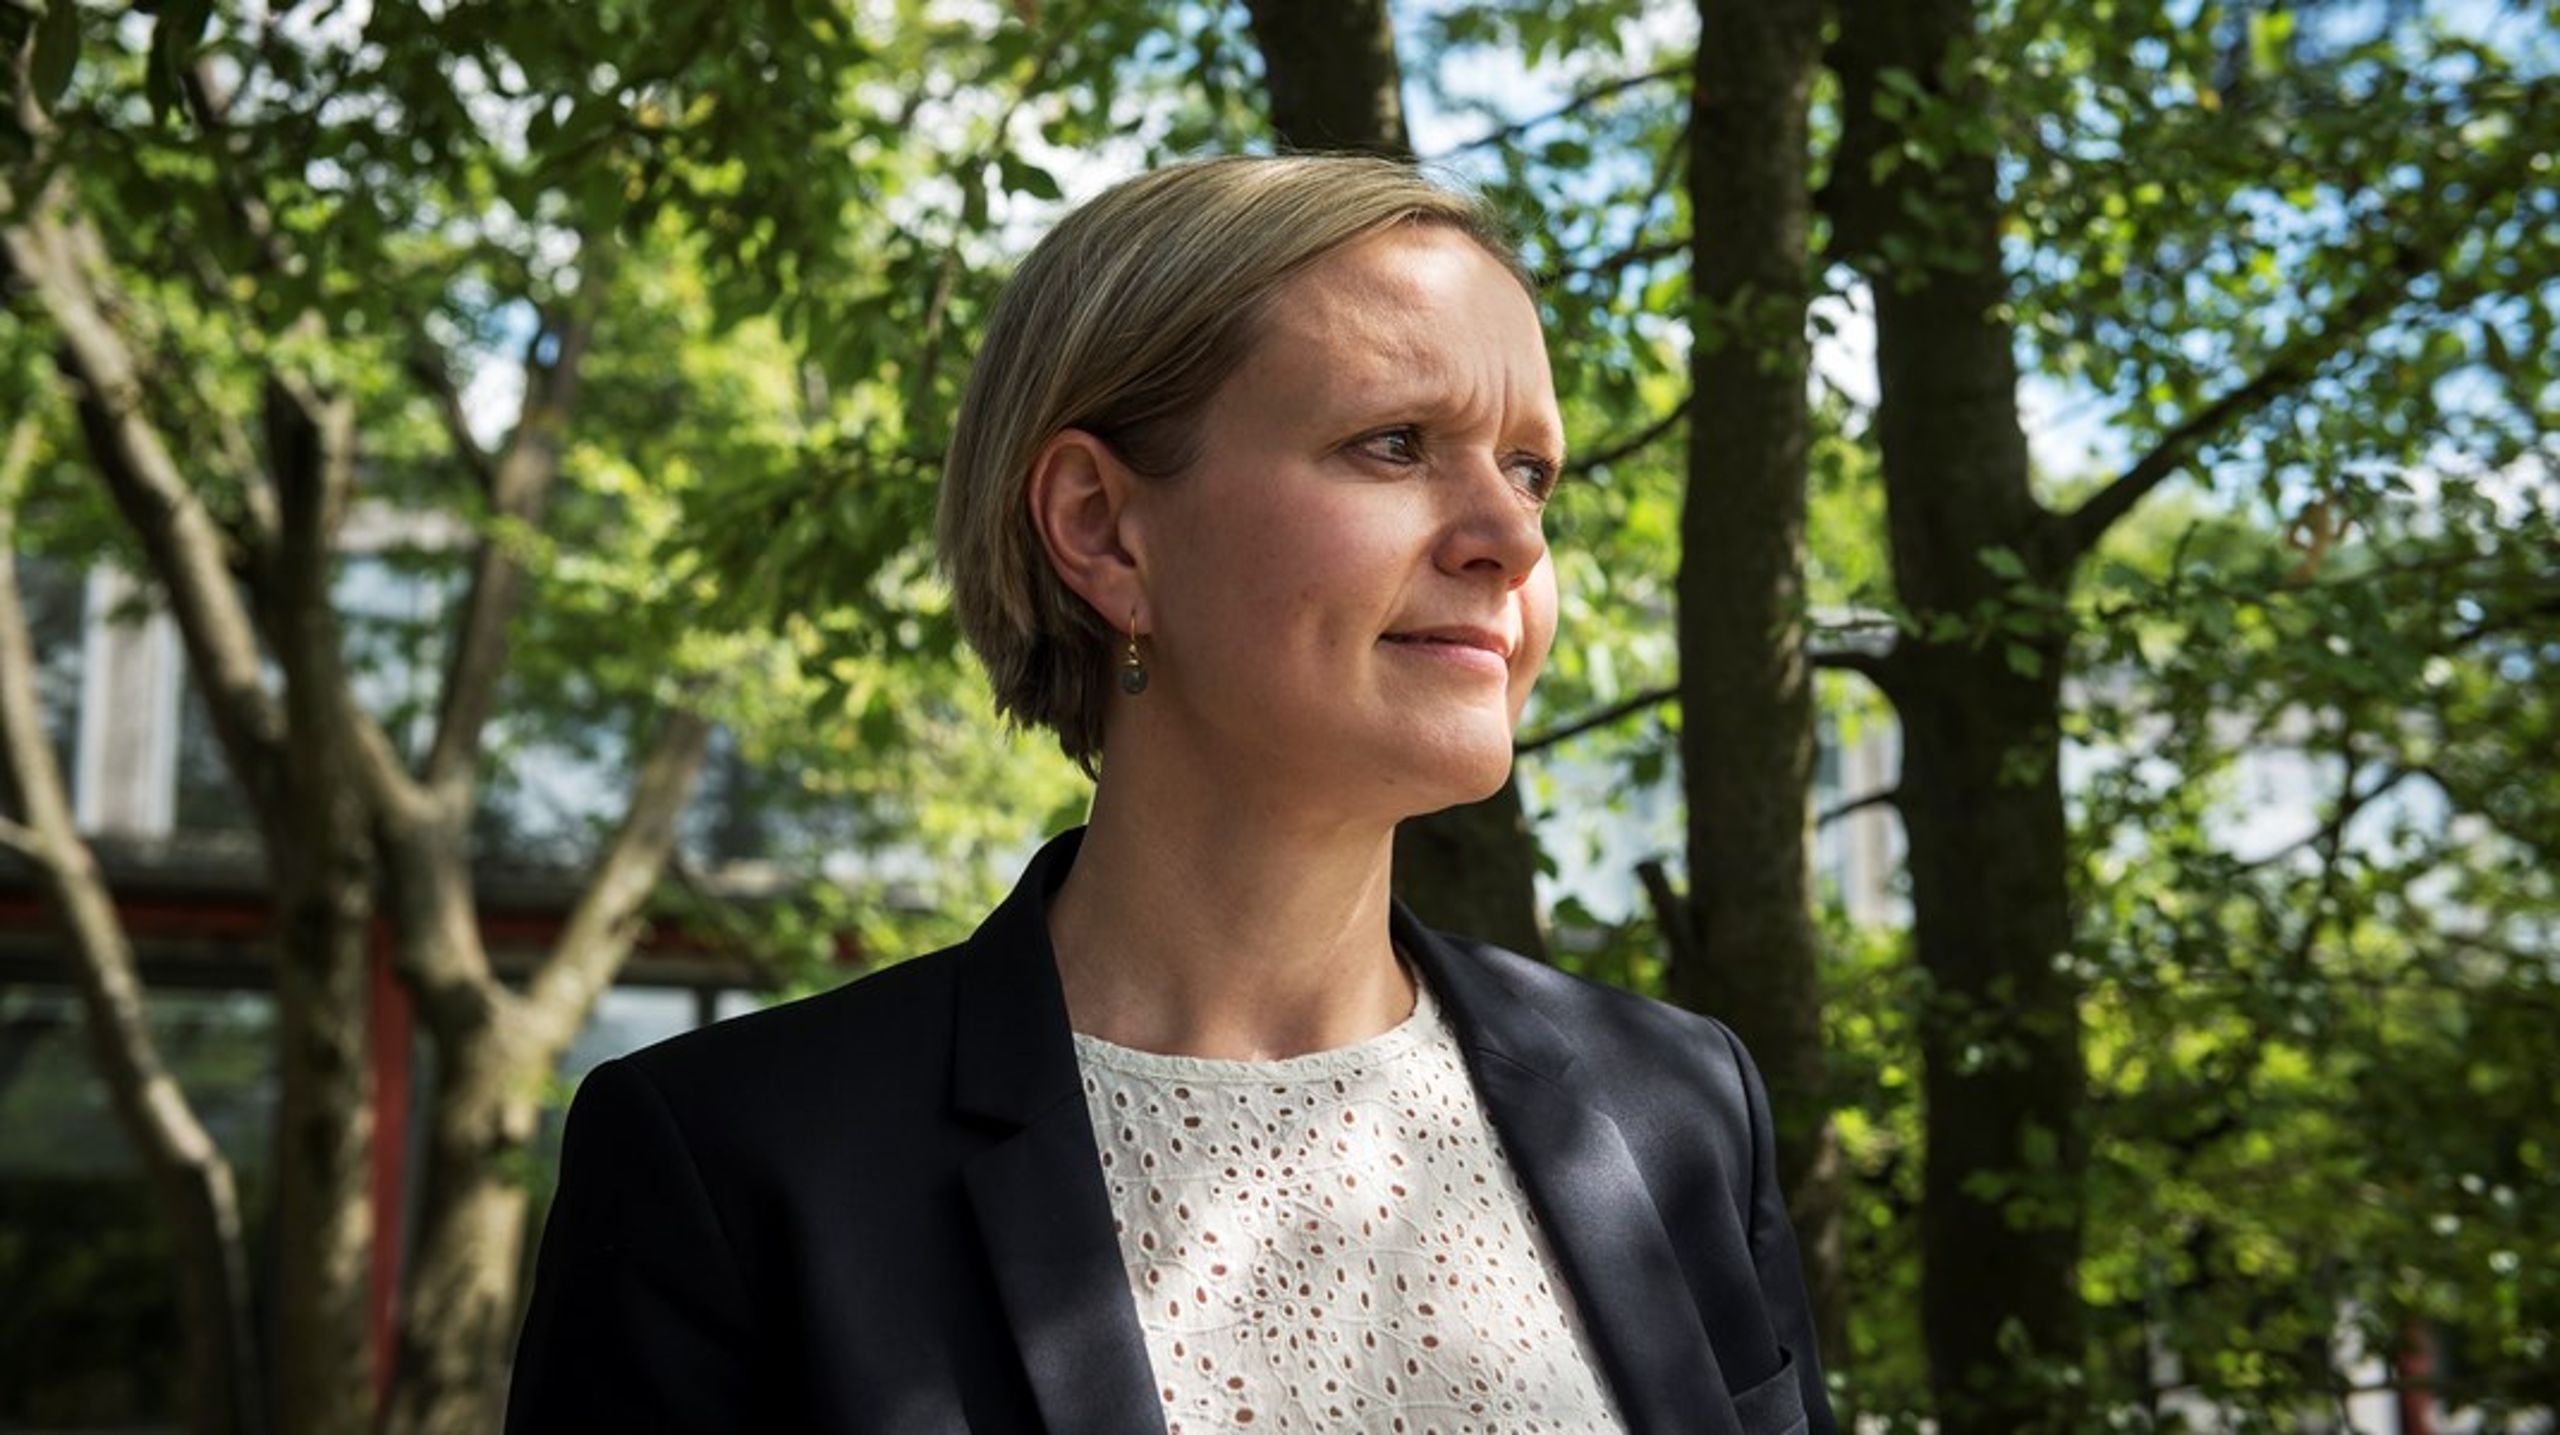 Venstres beskæftigelsesborgmester i København støtter Socialdemokratiets udspil om 37 timers aktivering for flygtninge og indvandrere.